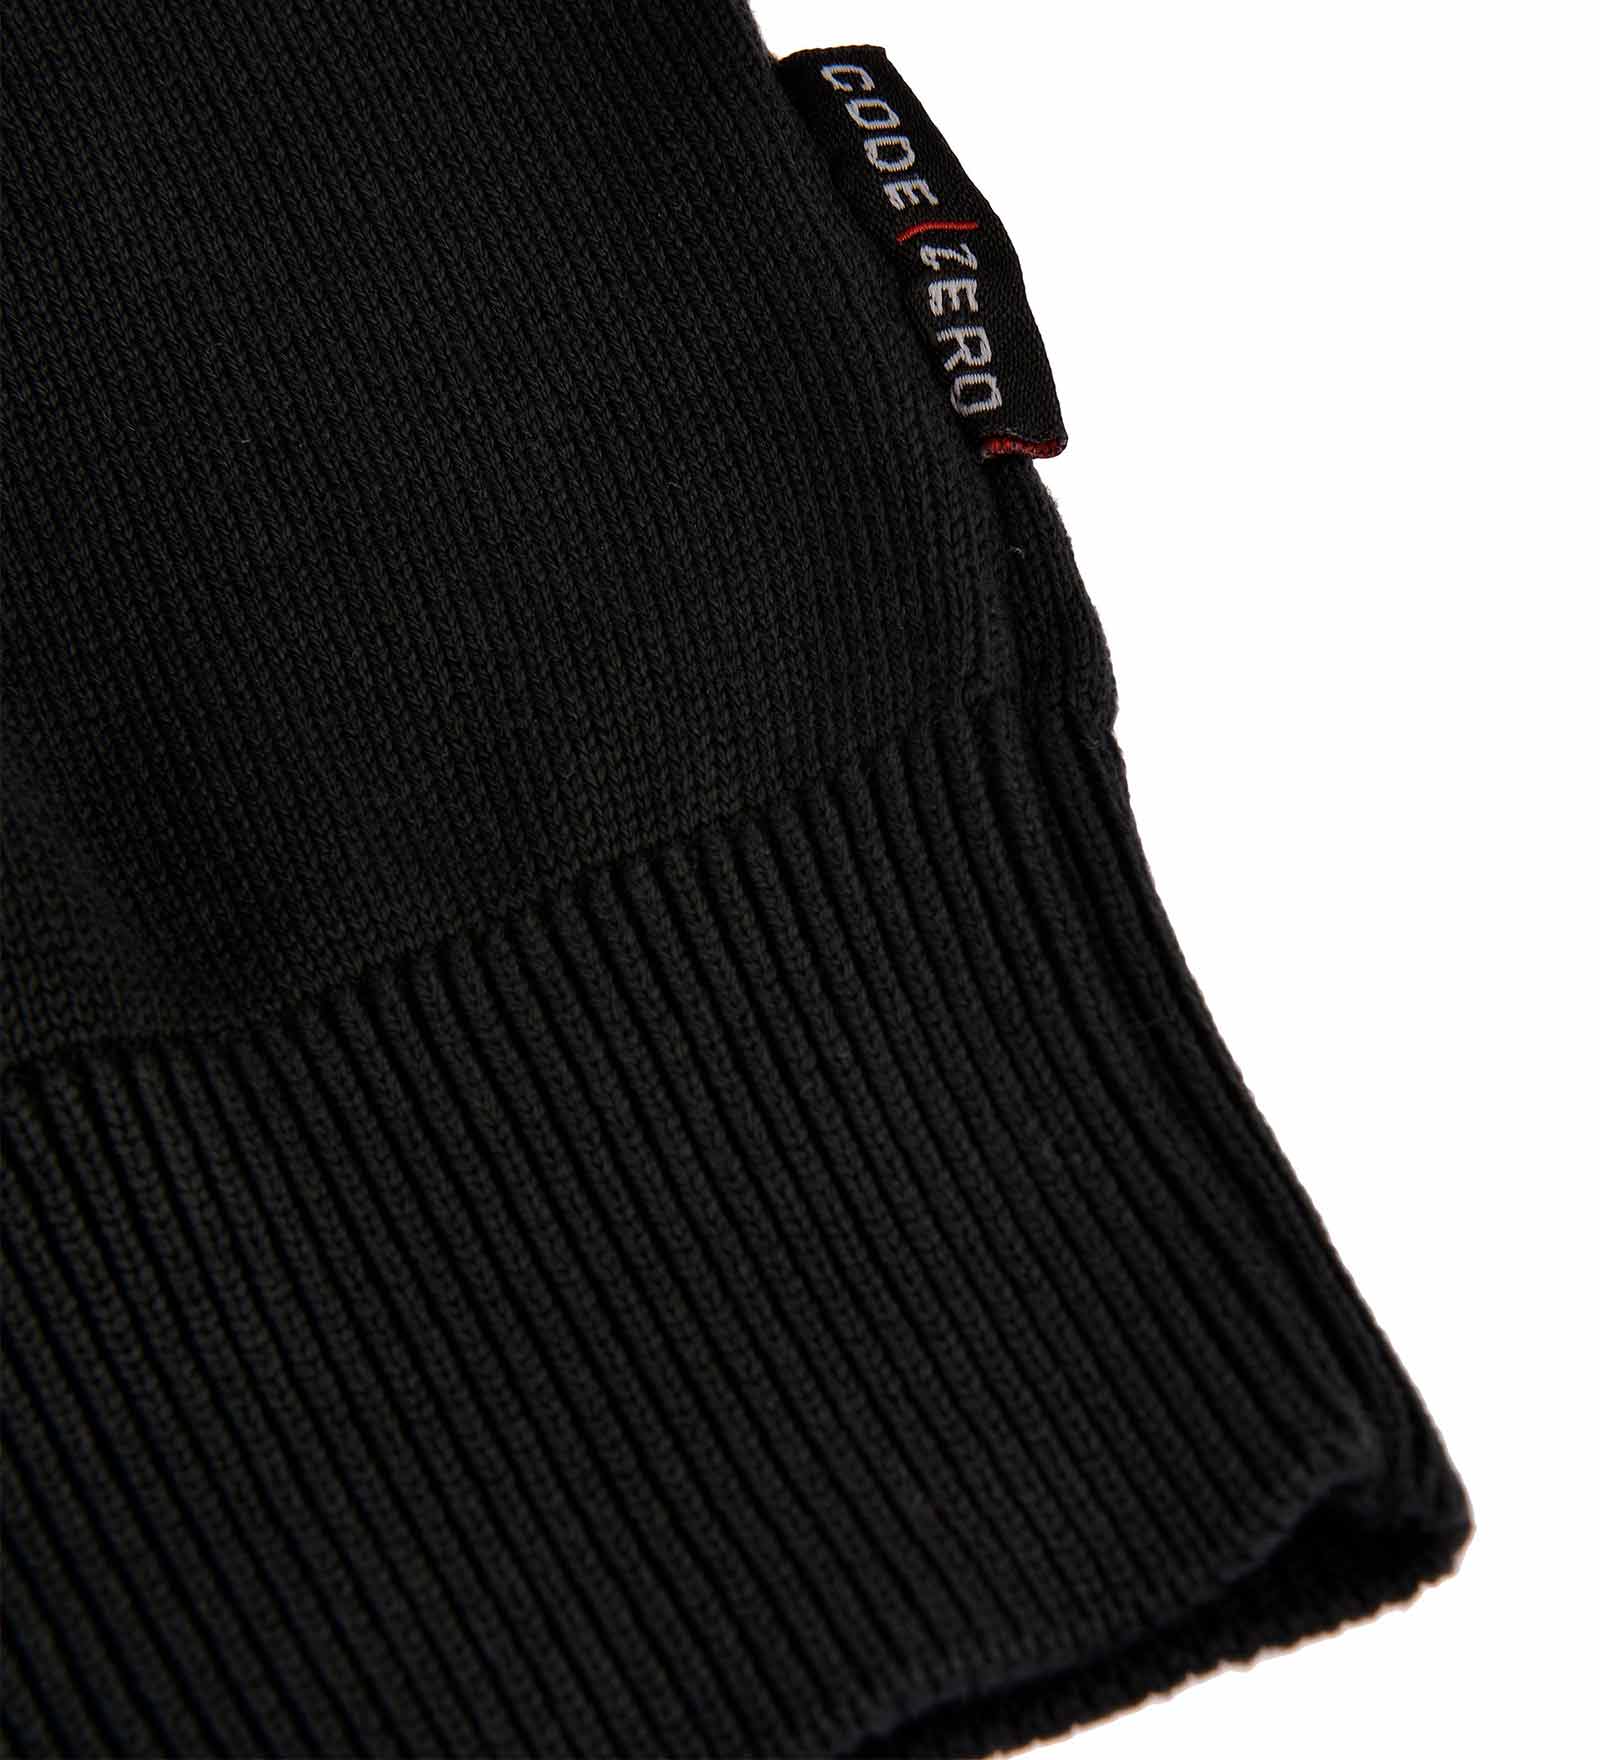 Details of a black jumper